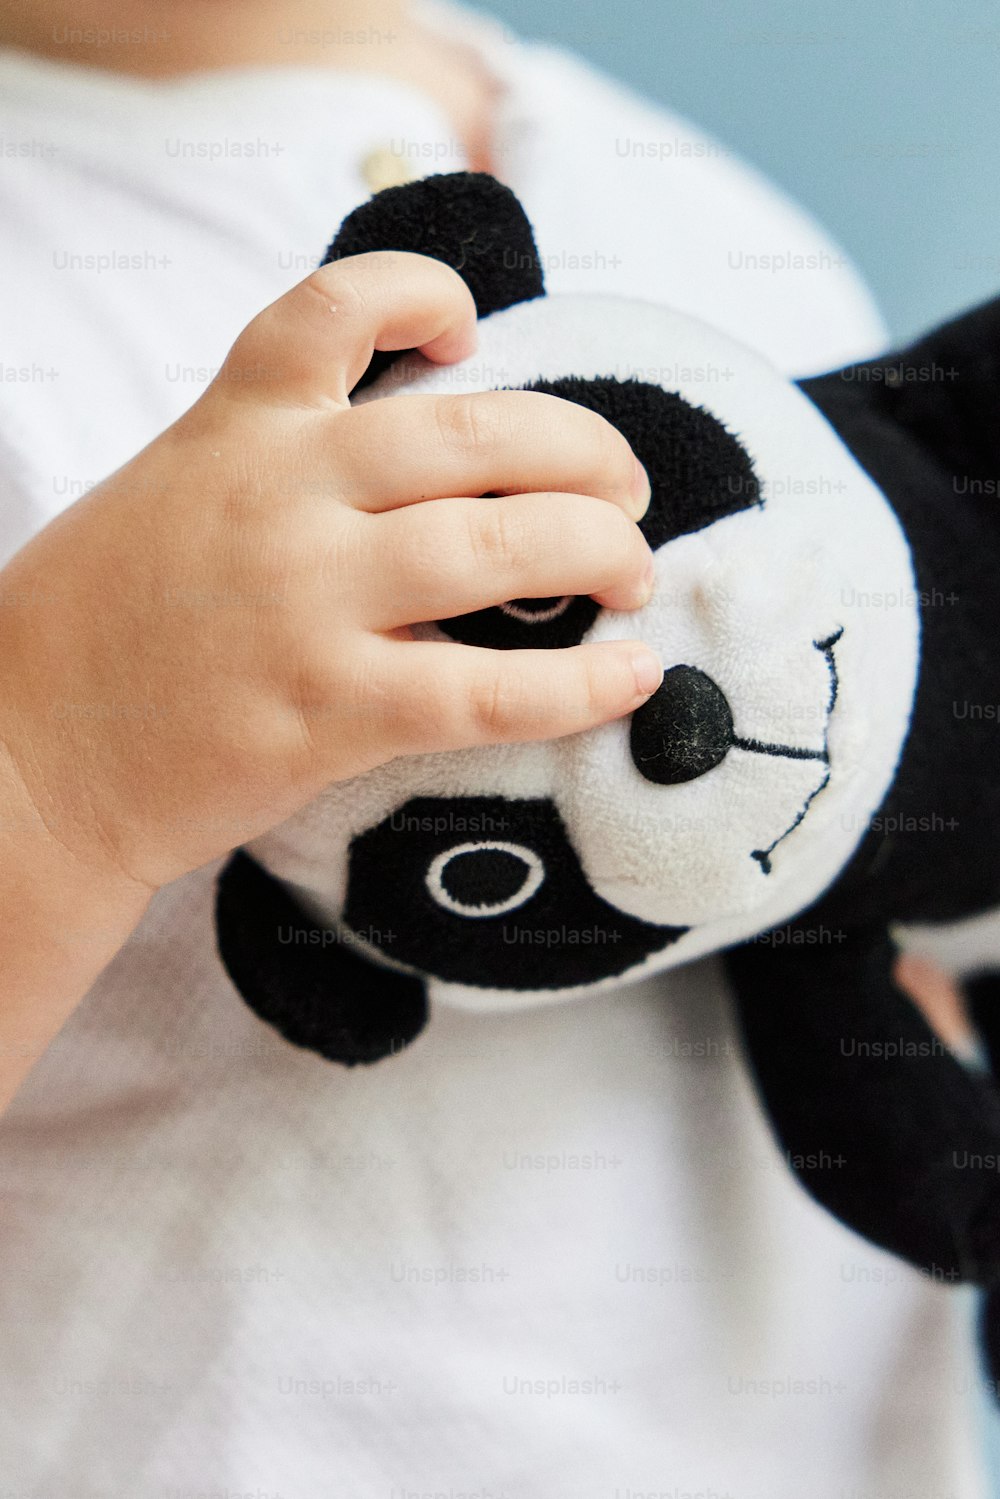 팬더 곰 인형을 안고 있는 작은 아이